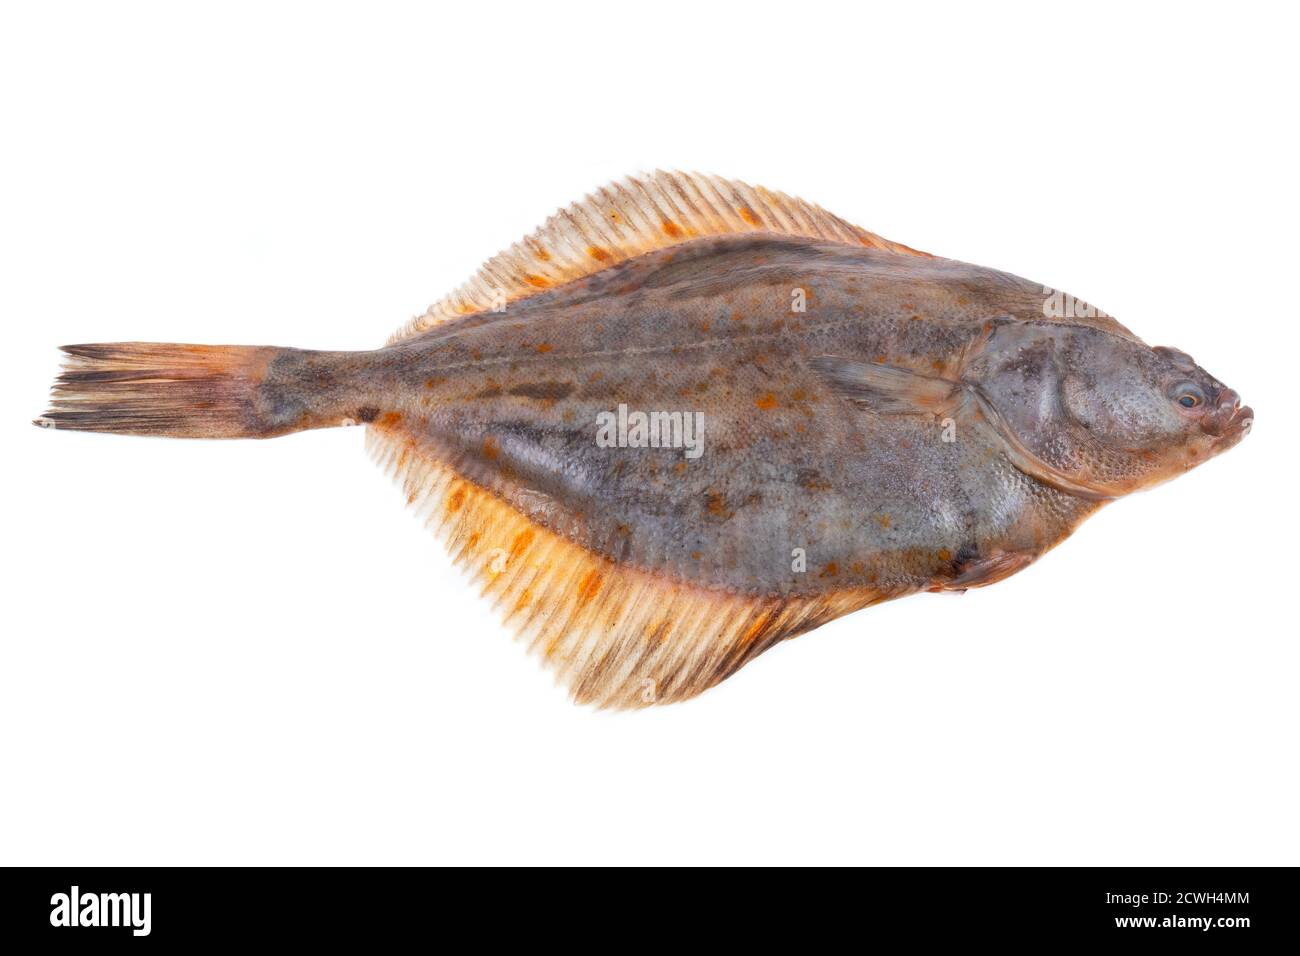 Whole single fresh raw plaice fish isolated on white background Stock Photo